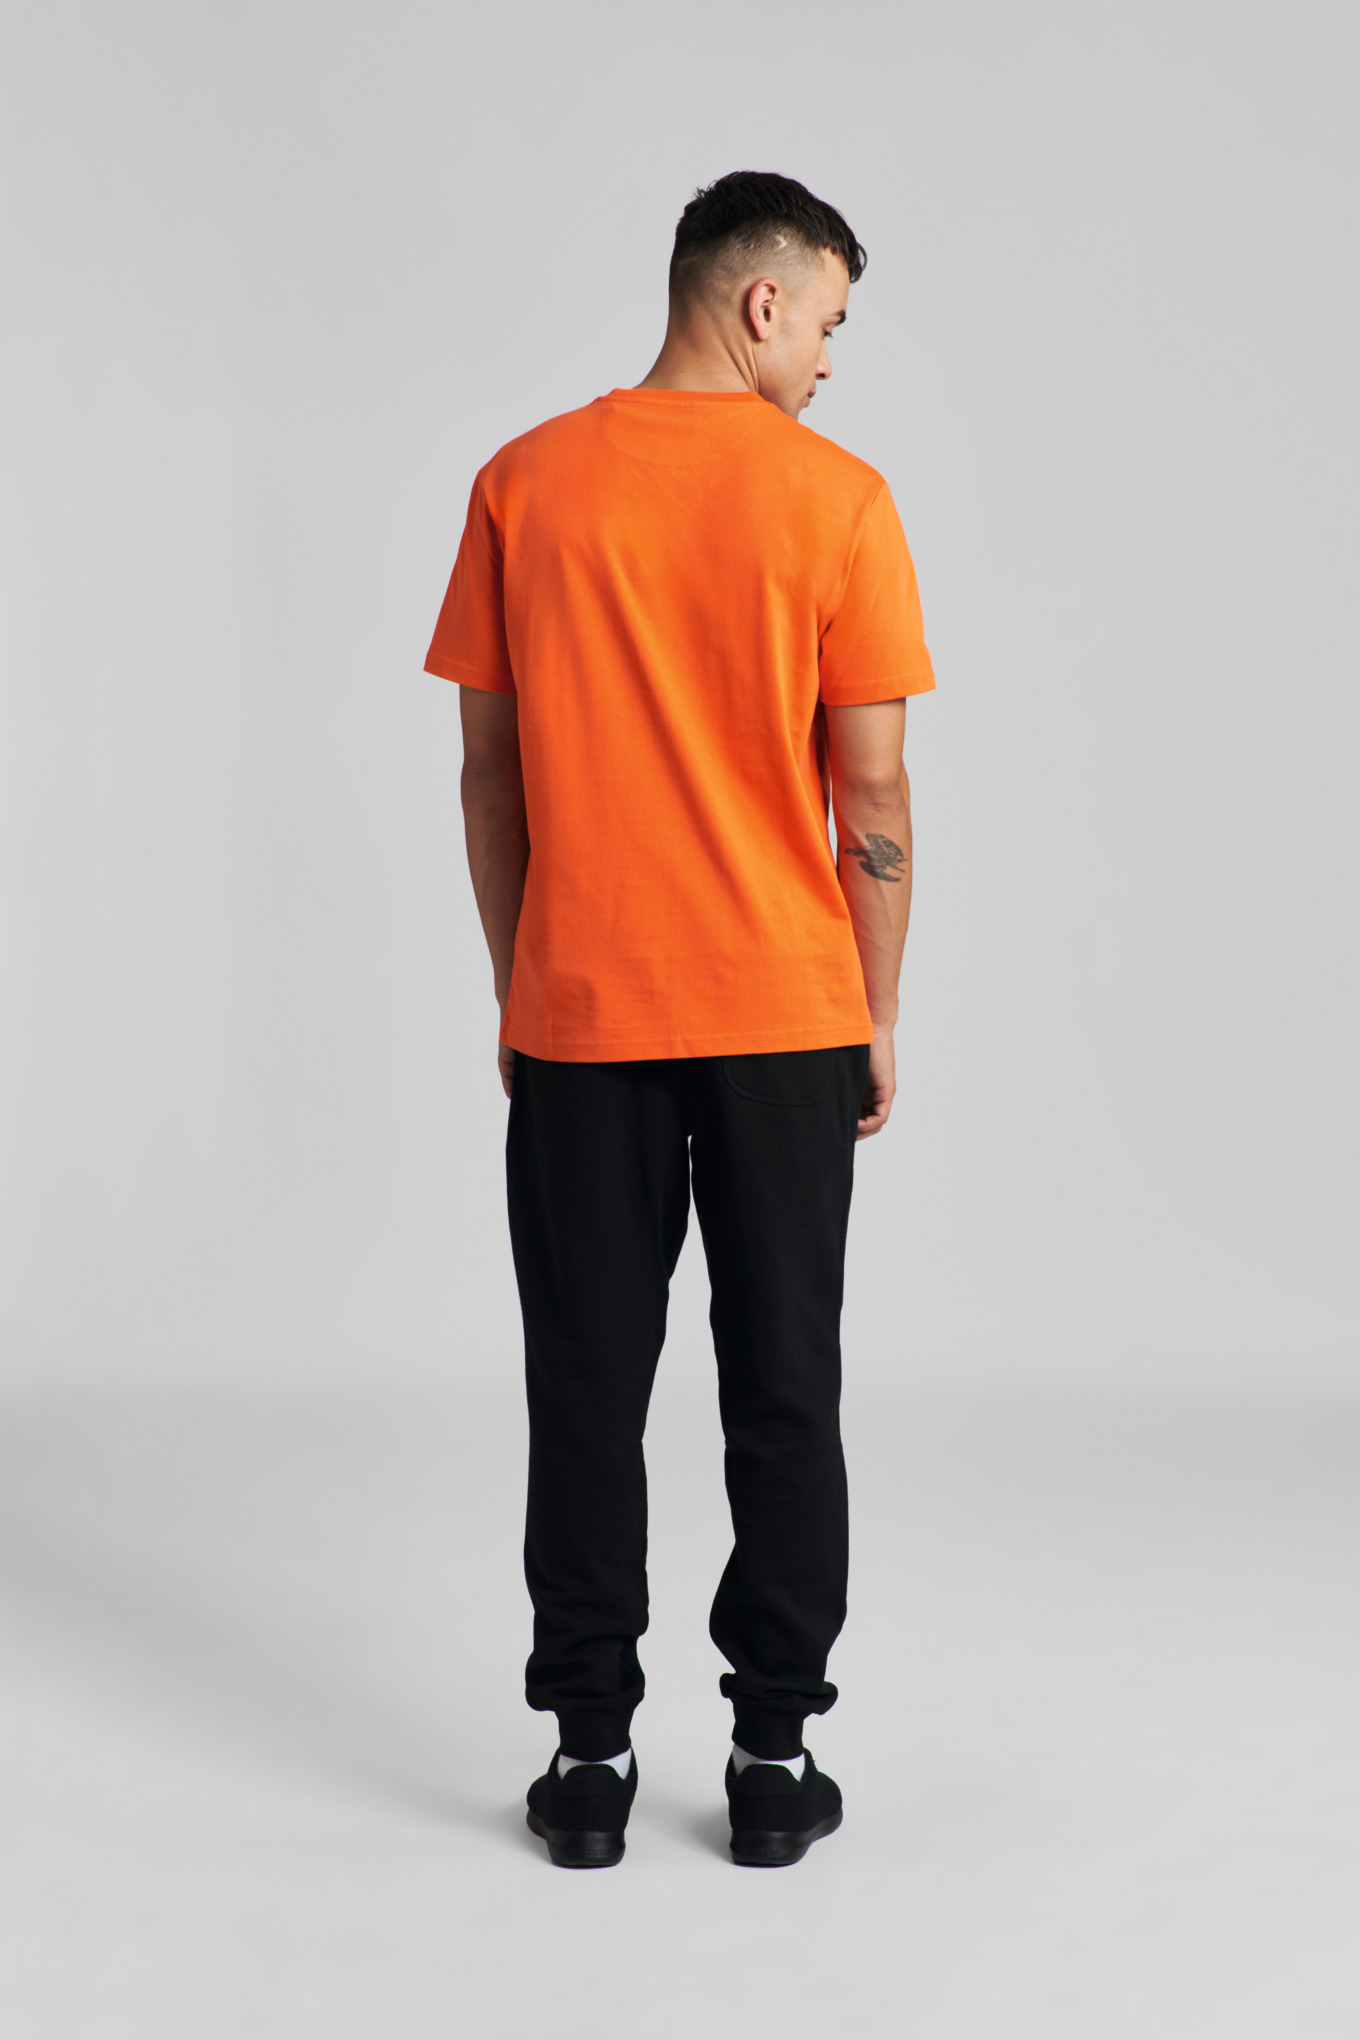 T-Shirt OVERSIZED Orange